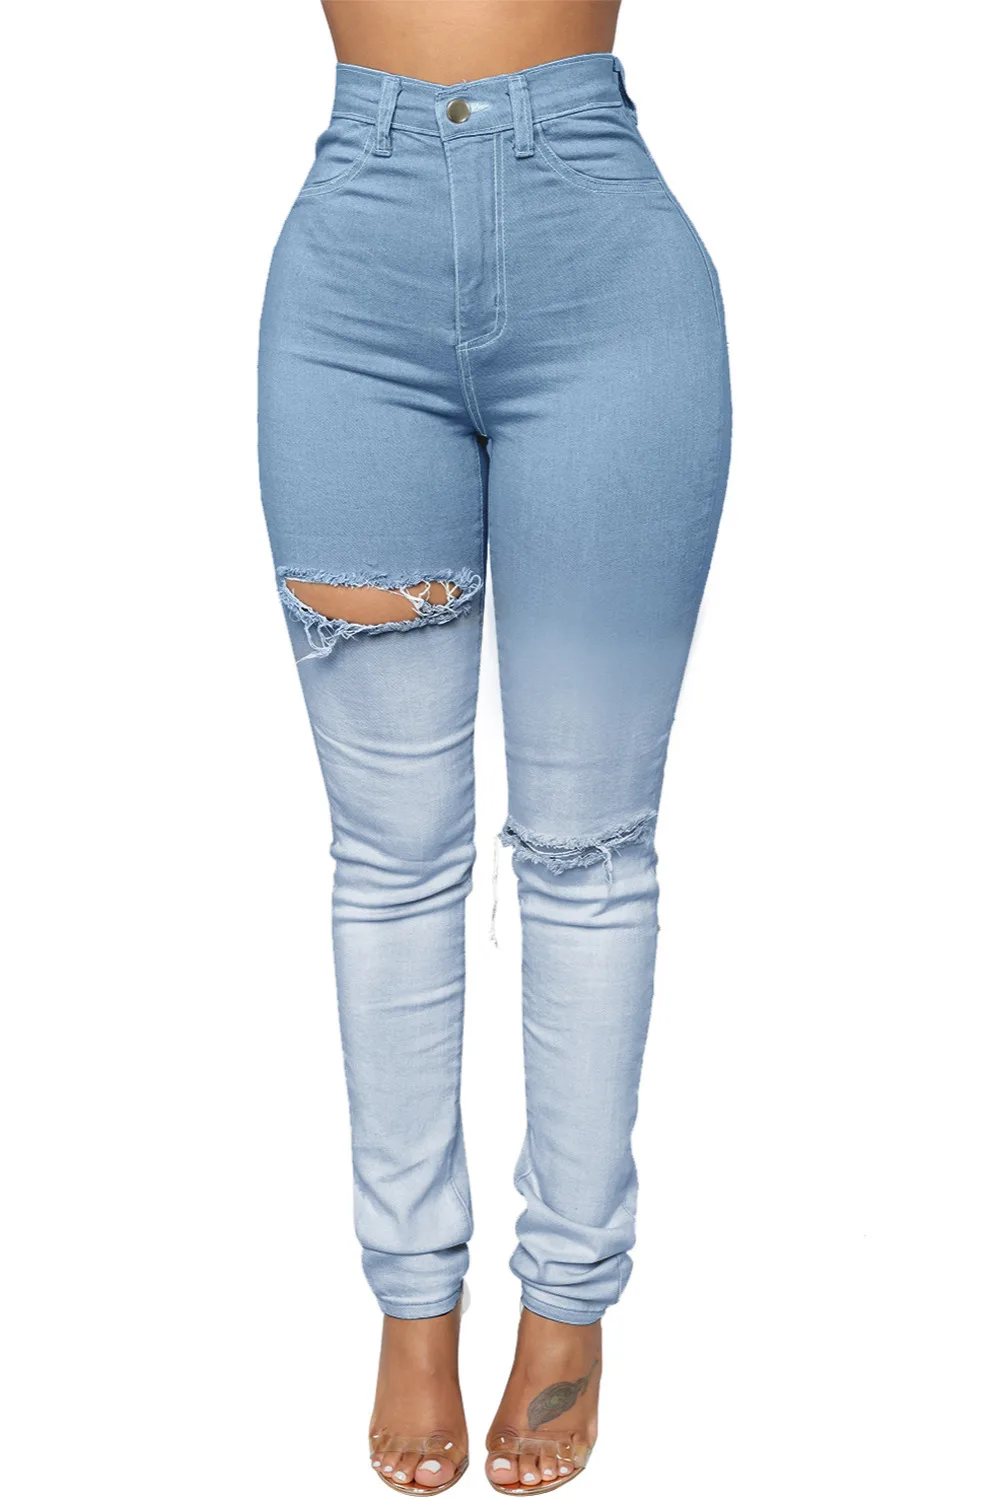 Длинные штаны осень зима Основные Высокая талия брюки для Для женщин тощий Light Blue Ombre Bleach Wash Ripped карандаш джинсы 786073